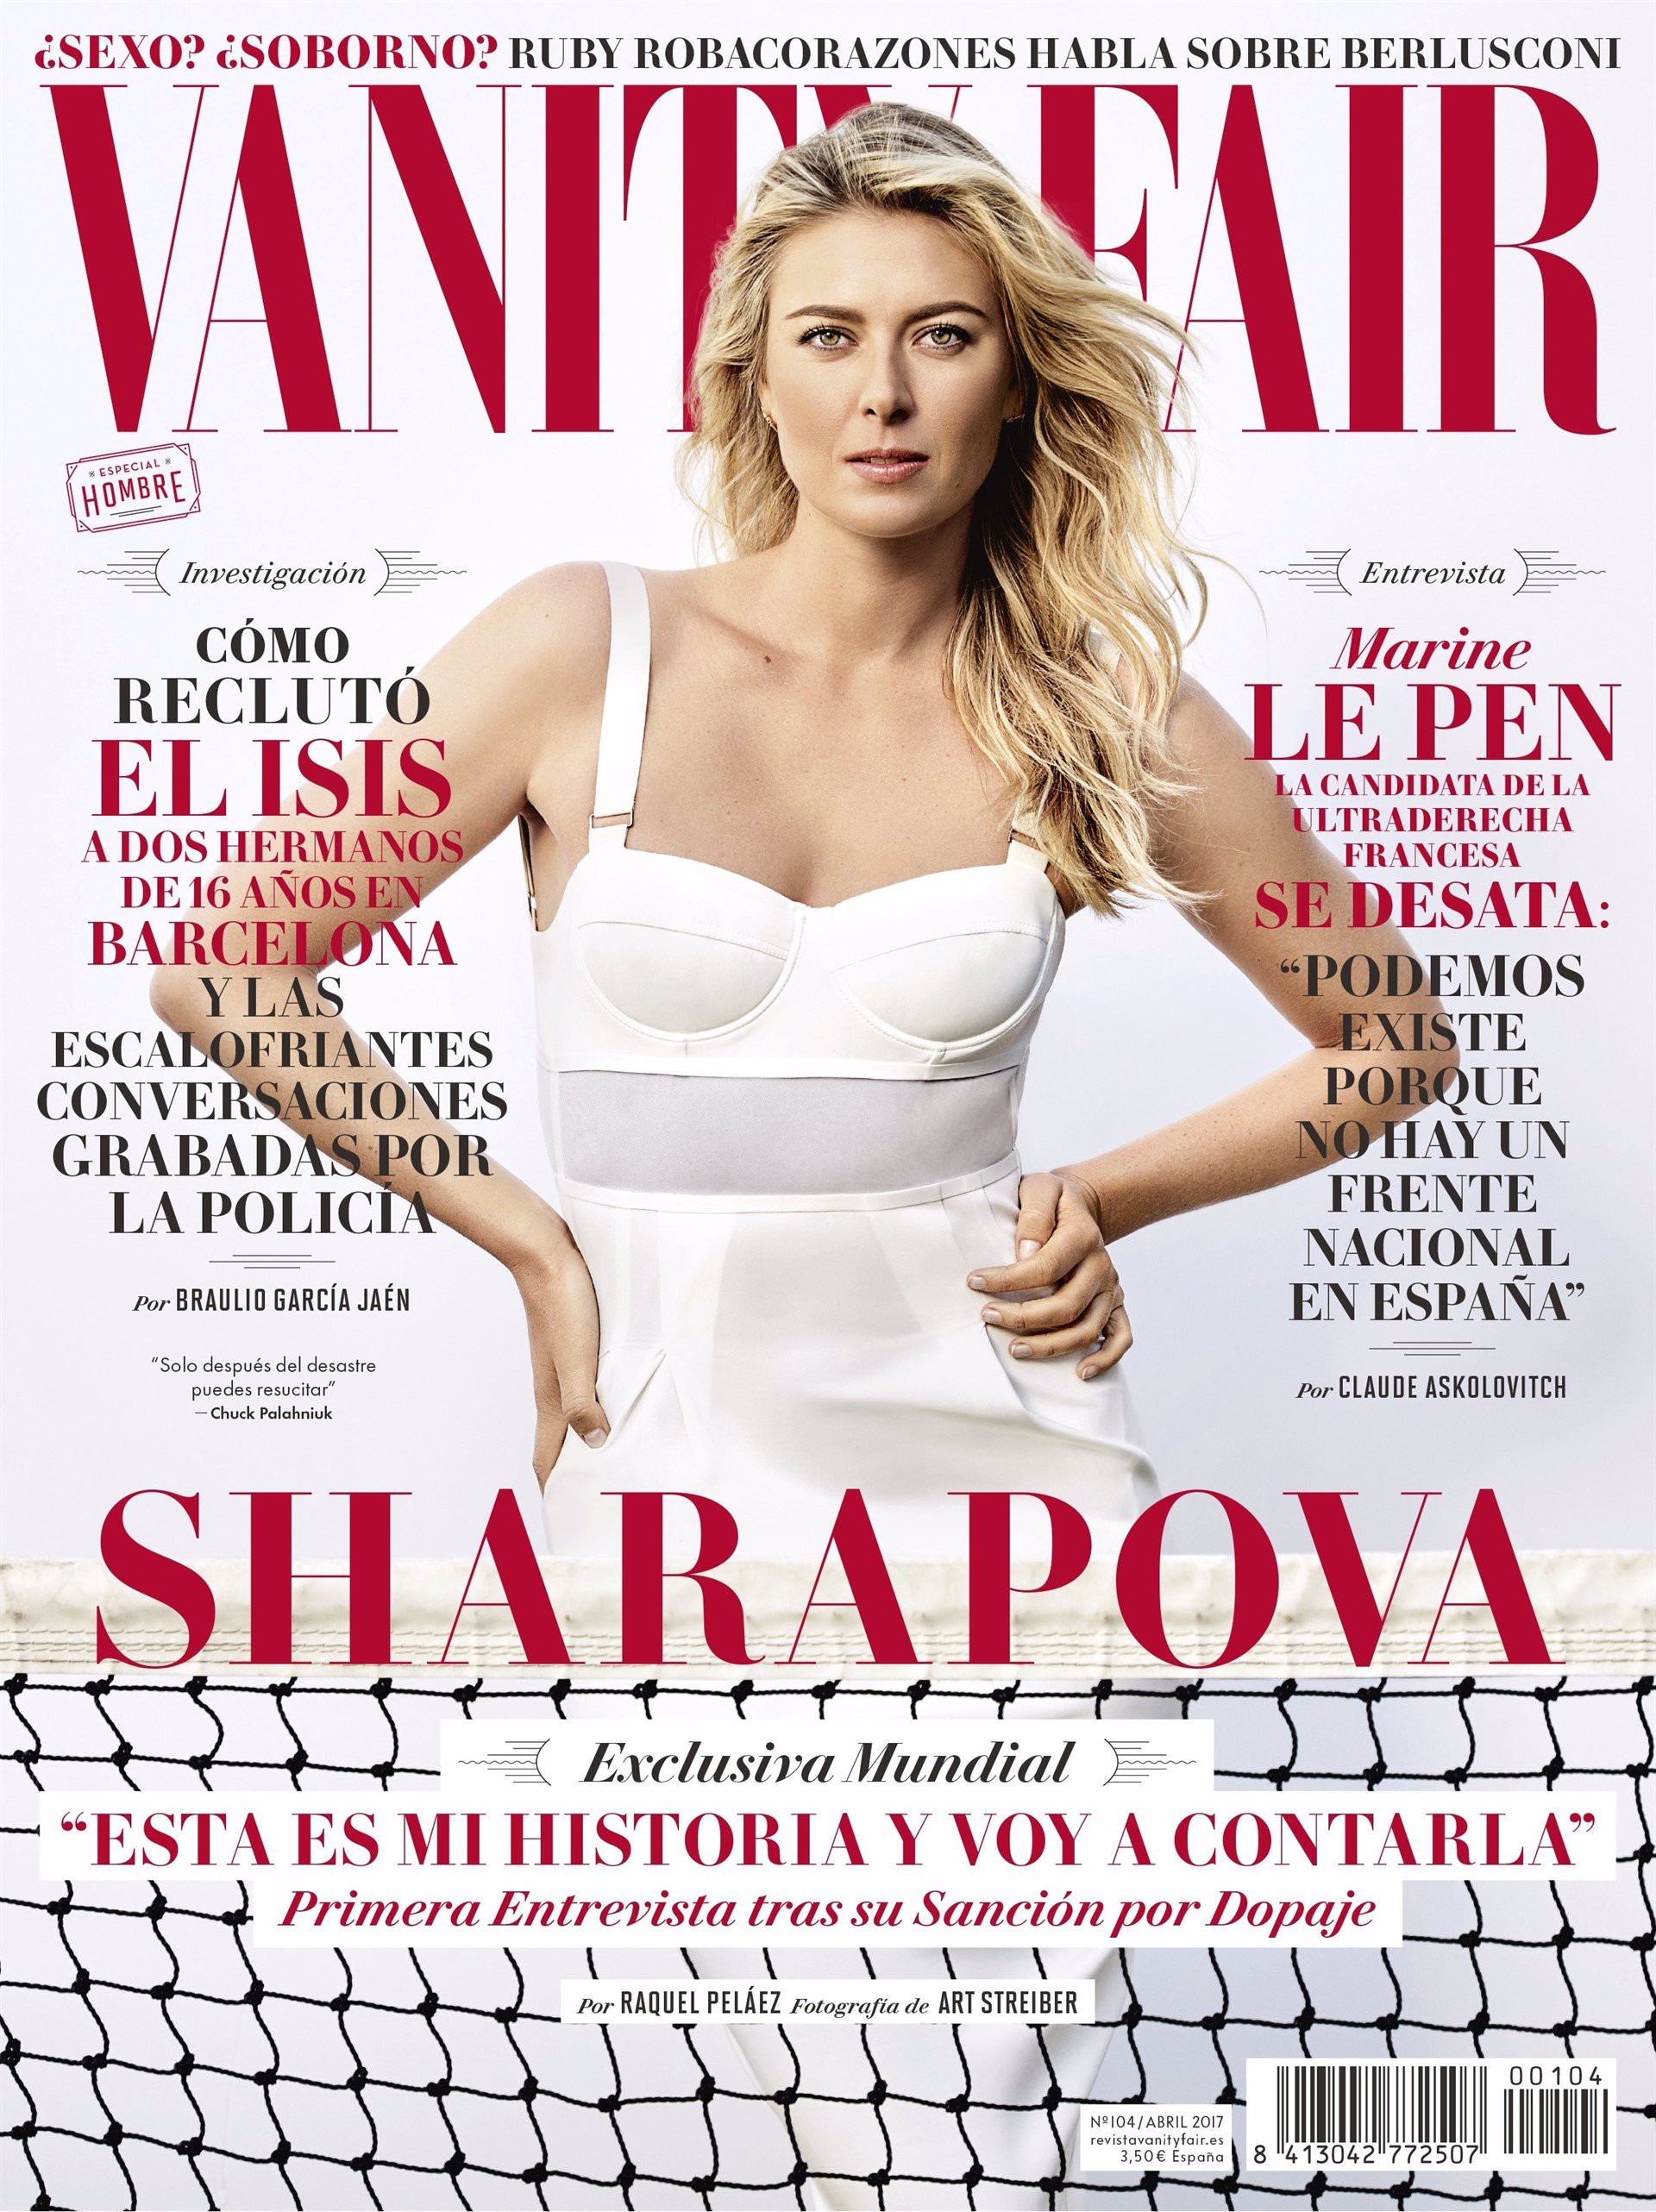 Sharapova: 'Nadal me mandó un mensaje muy amable cuando todo ocurrió y me mostró su apoyo'